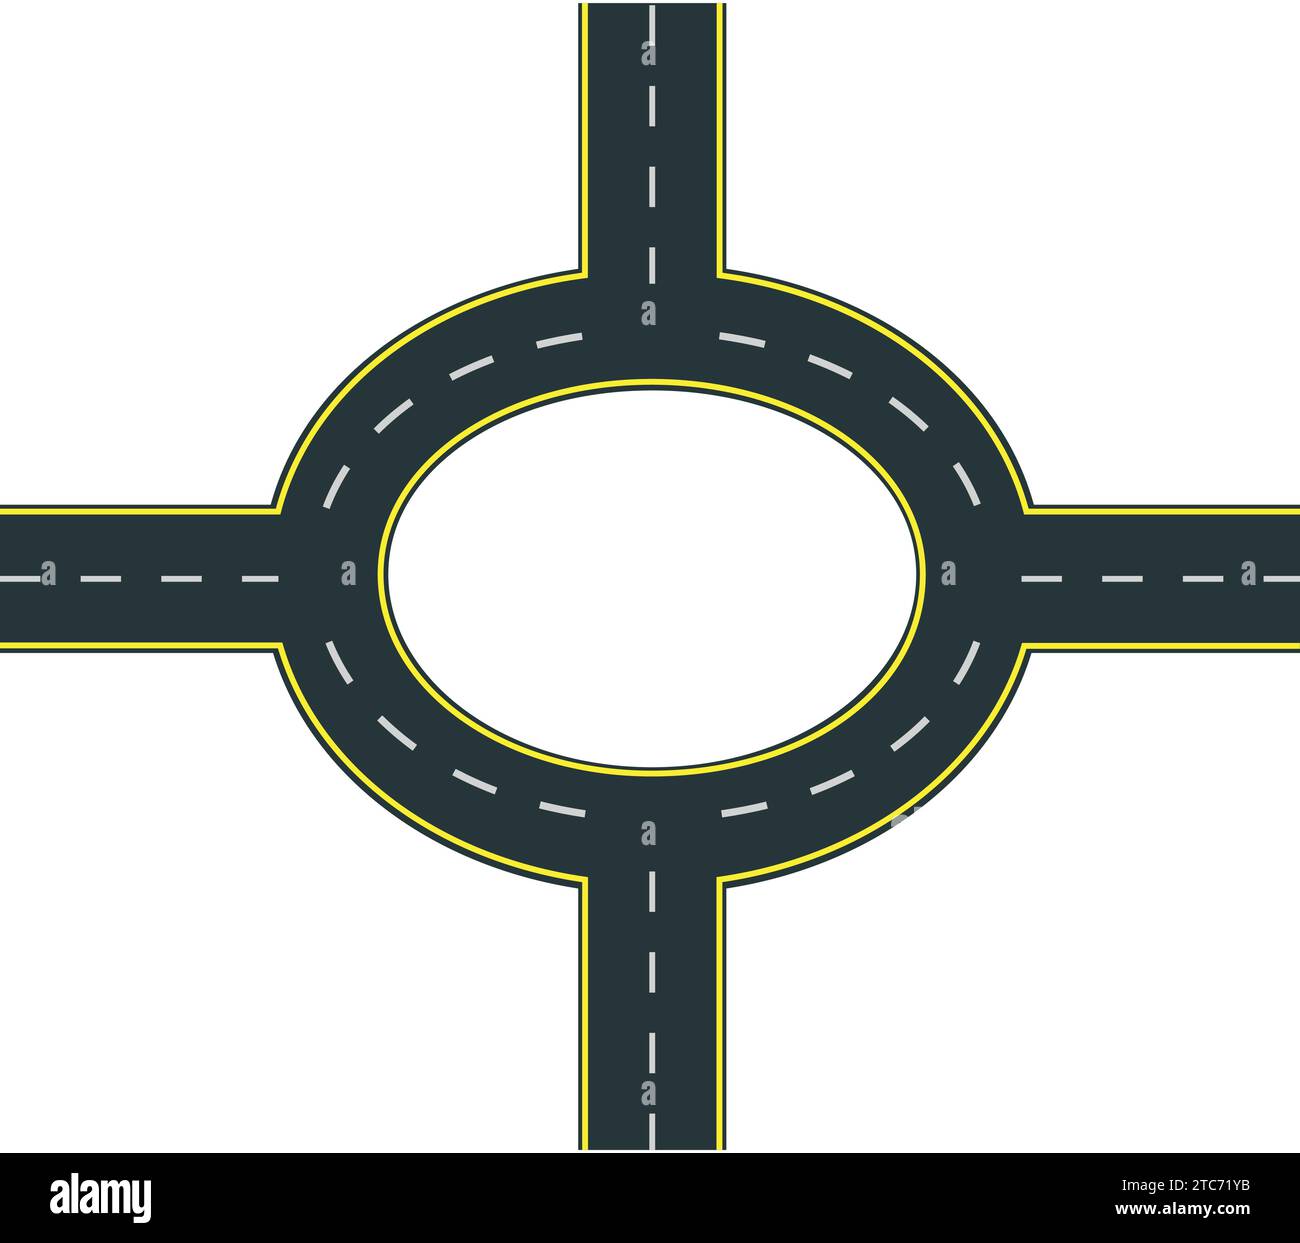 Circonferenza stradale asfaltata tangenziale segnaletica stradale vettoriale. Illustrazione Vettoriale